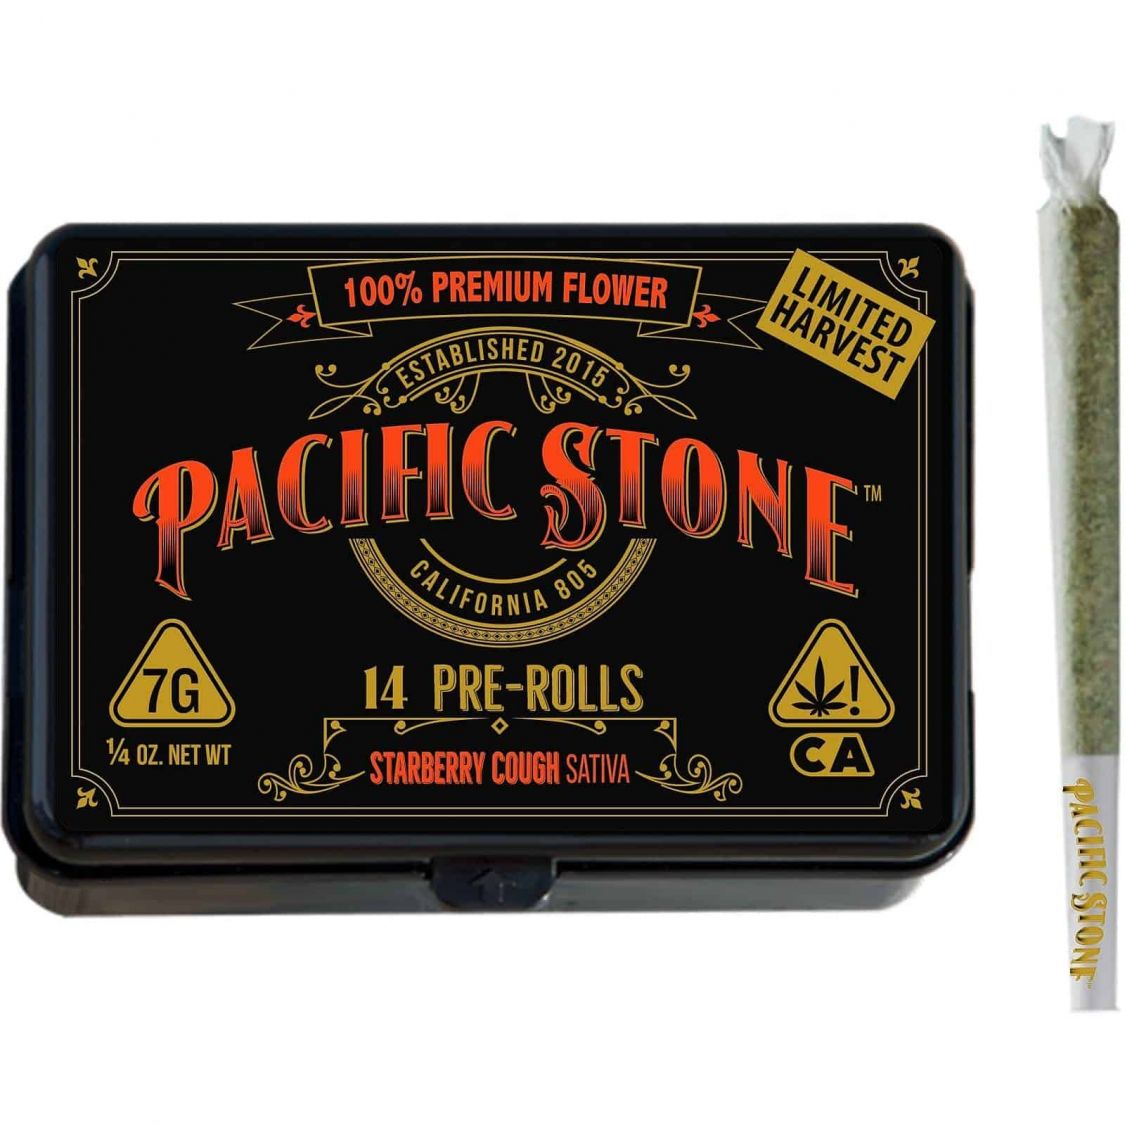 Pacific Stone Strawberry Cough Sativa Pre-Rolls 14pk (7g) Pre-rolls Preroll